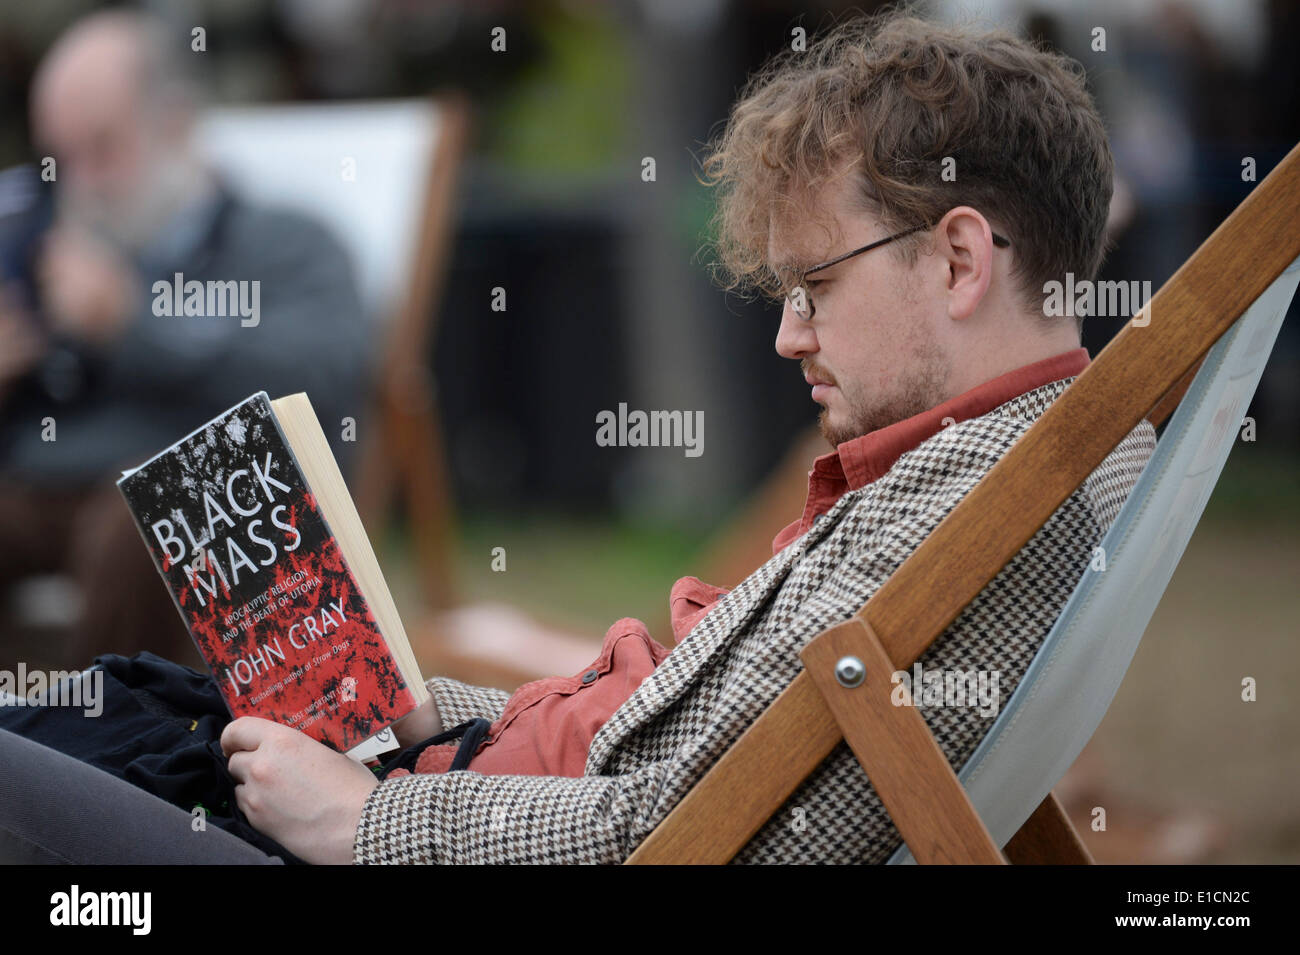 Heno en Wye, Gales, el sábado 31 de mayo de 2014 personas sentadas en sillas leyendo libros sobre el penúltimo día del Daily Telegraph de 2014 Festival de la literatura de heno, Gales, Reino Unido Foto ©Keith morris Foto de stock